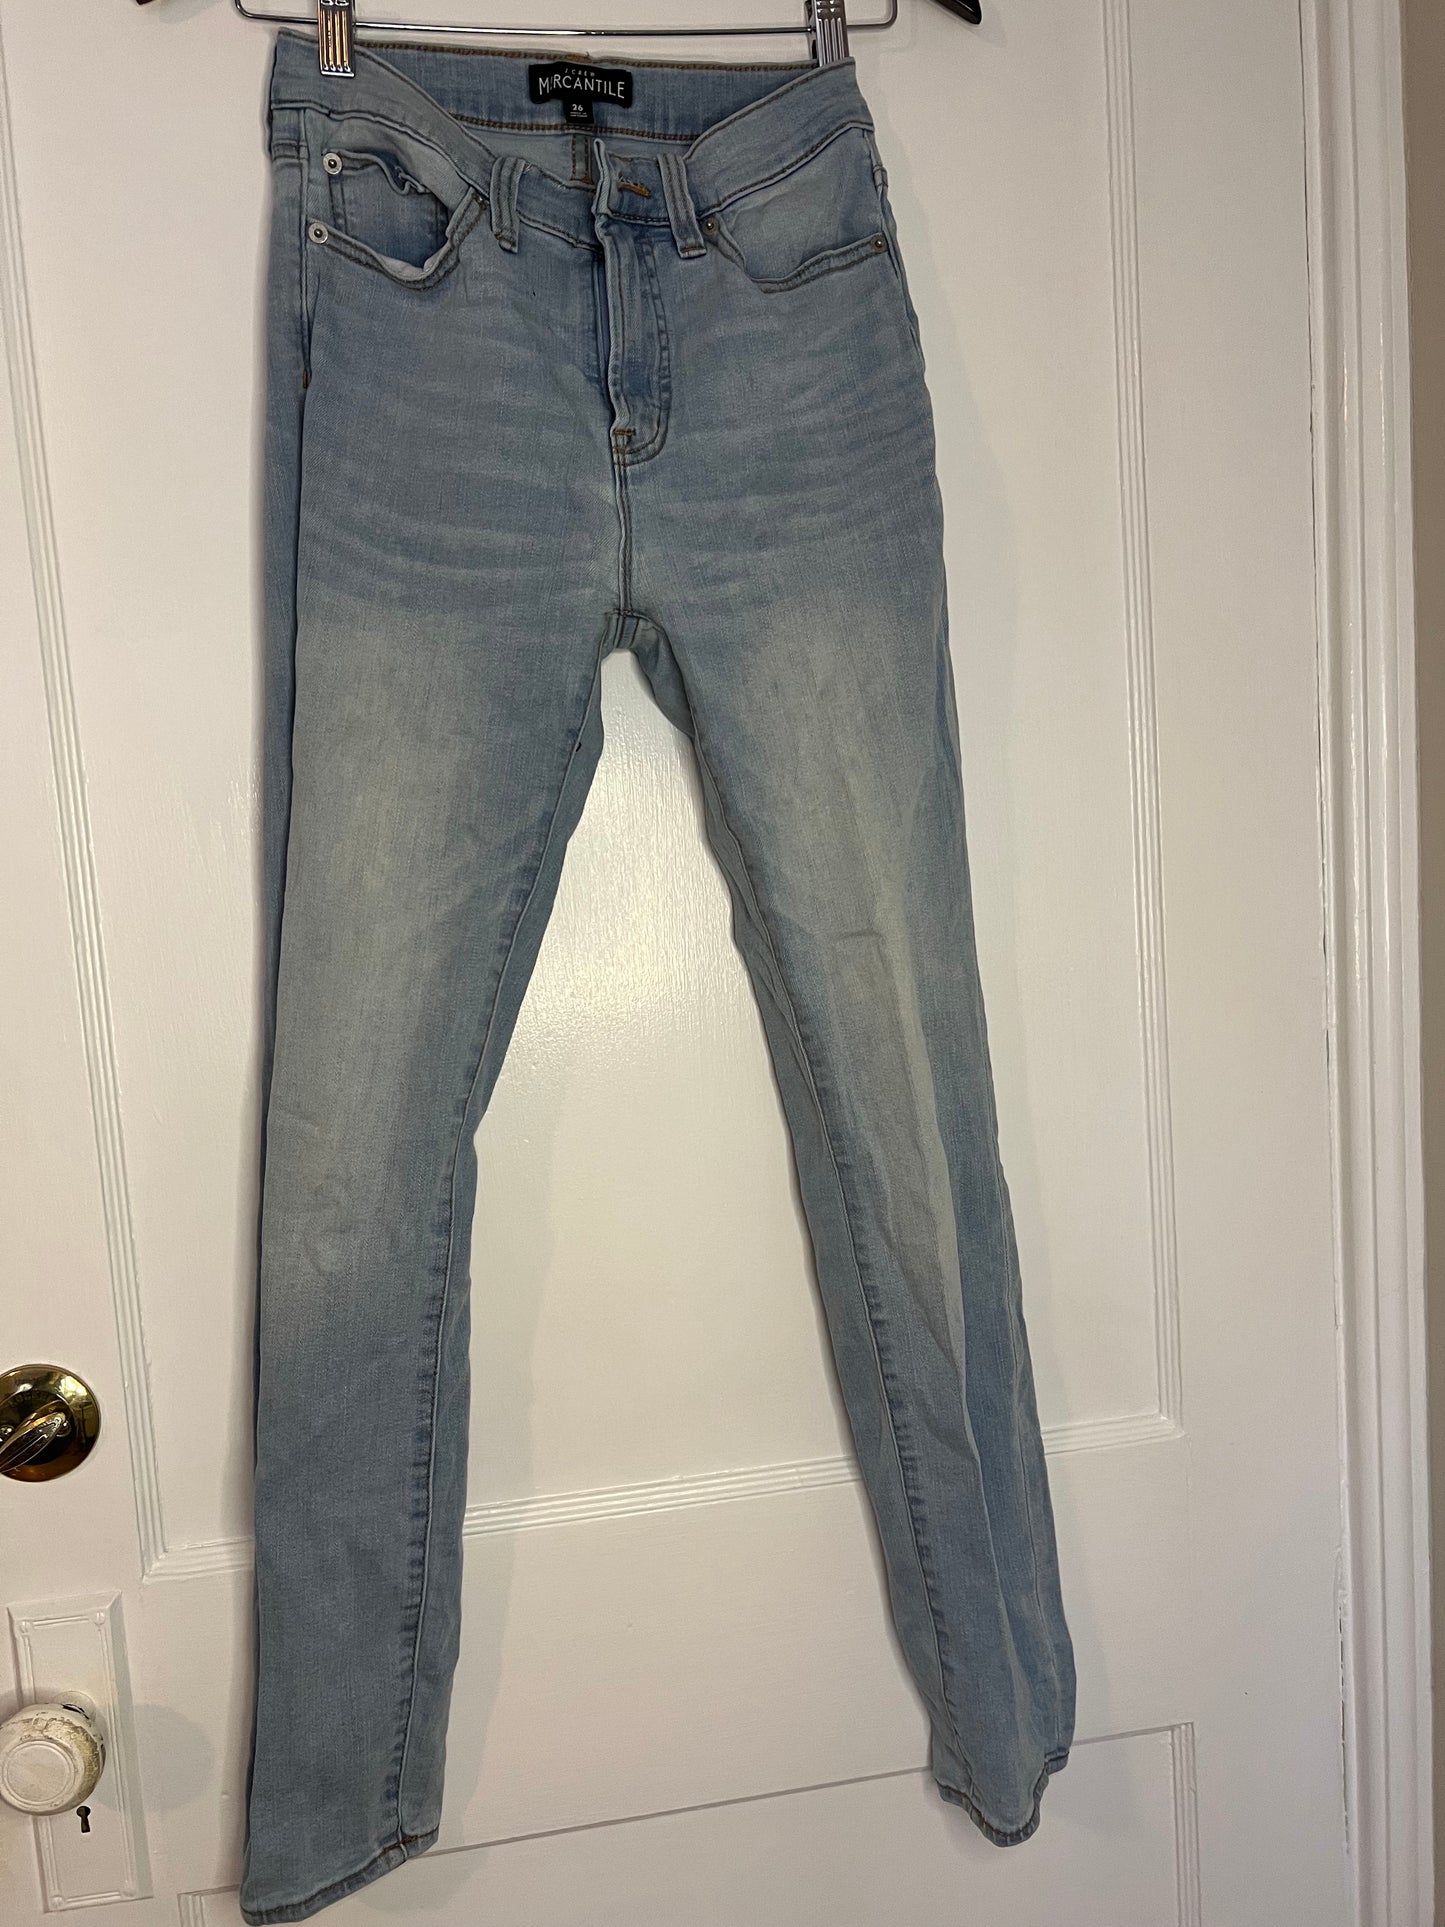 JCrew Mercantile Light Blue Wash Denim Jeans Size 26 EUC PPU 45208 or SCO Spring Sale